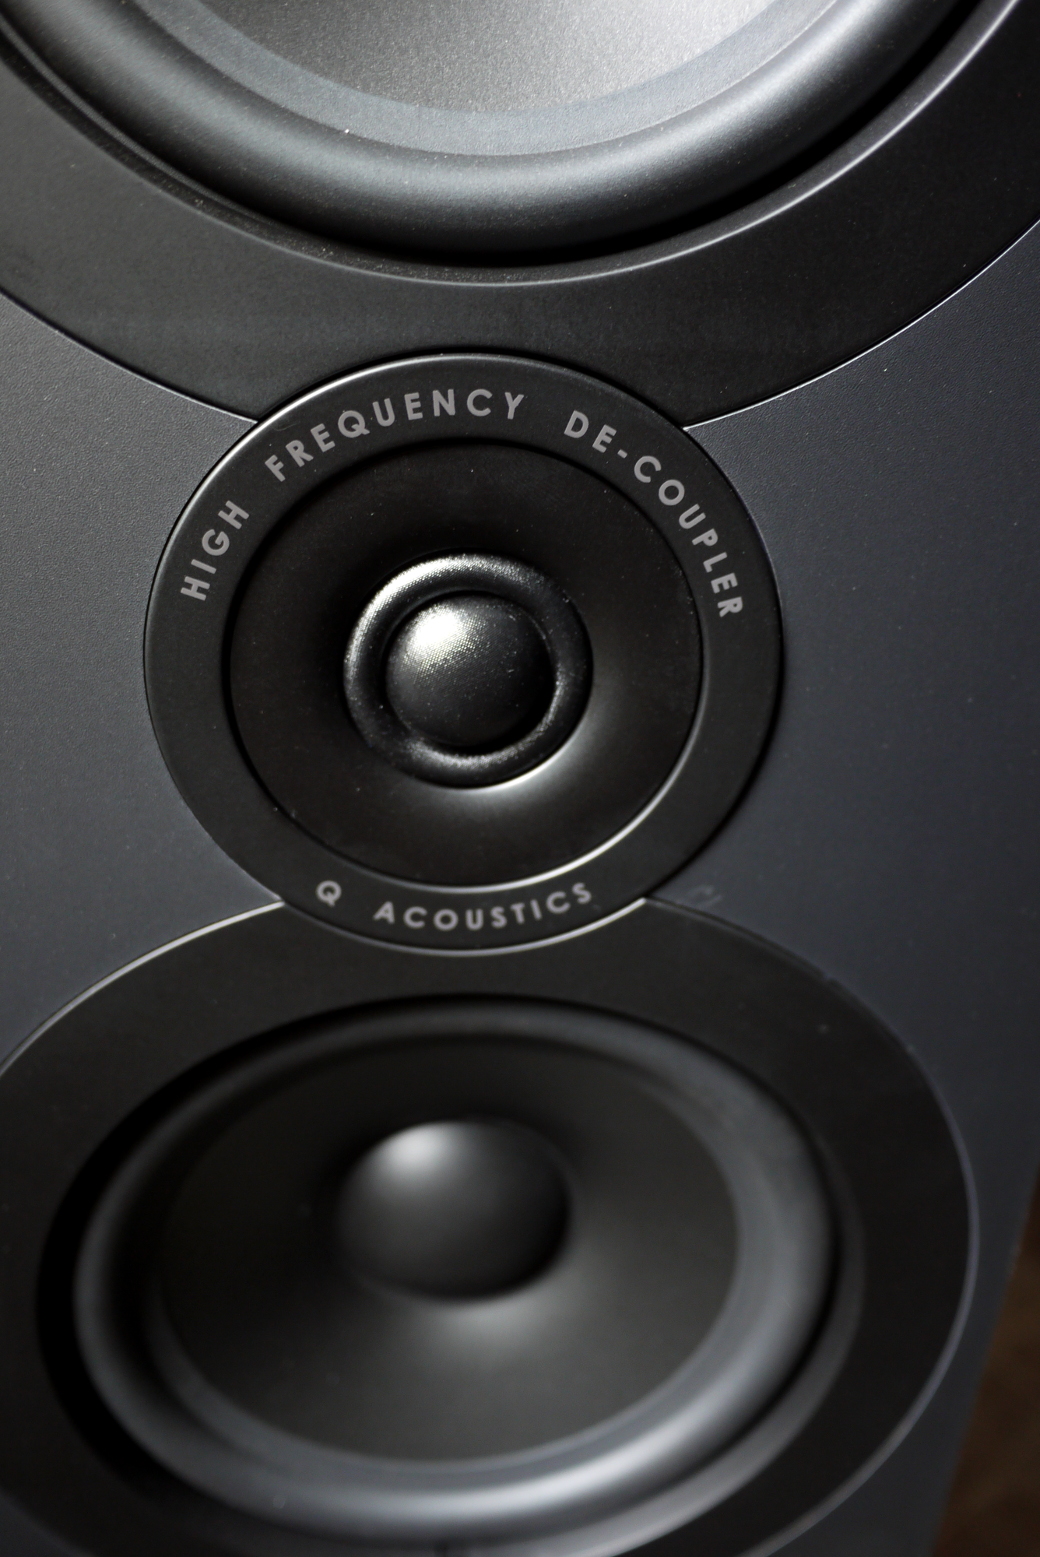 Q Acoustics 3050i Floorstanding Speaker Review